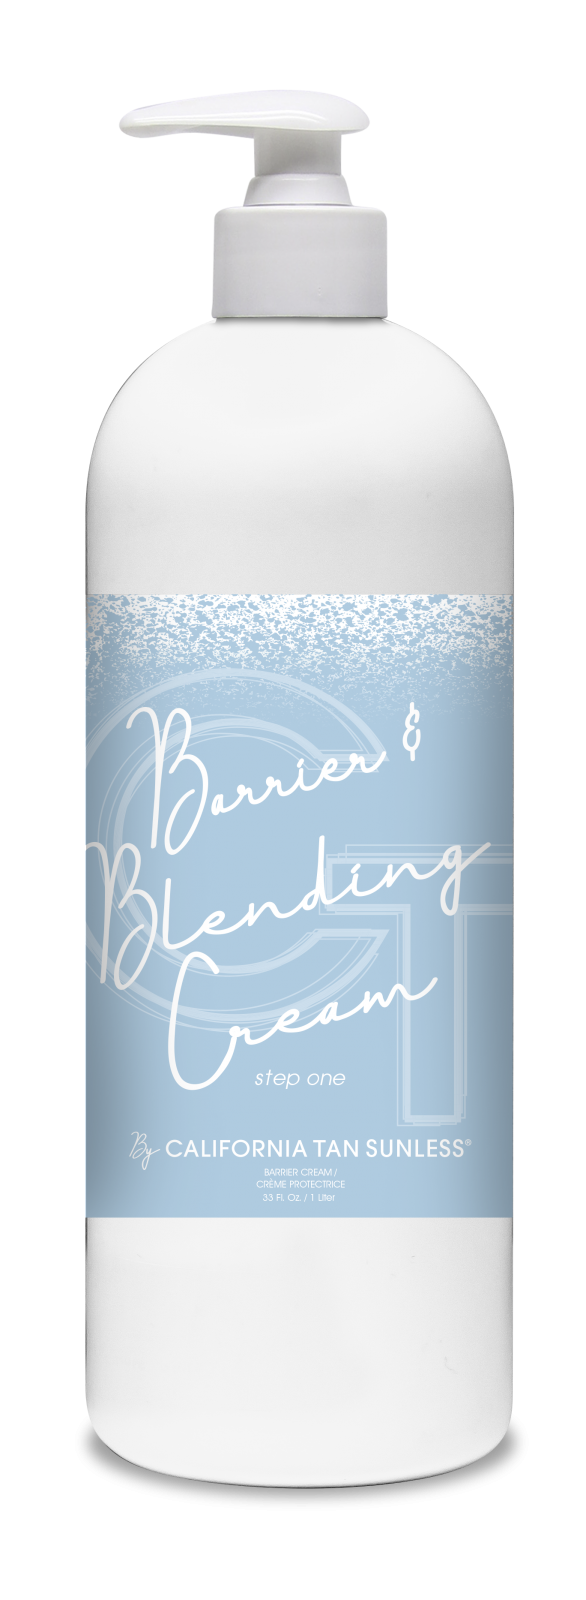 Barrier & Blending Cream